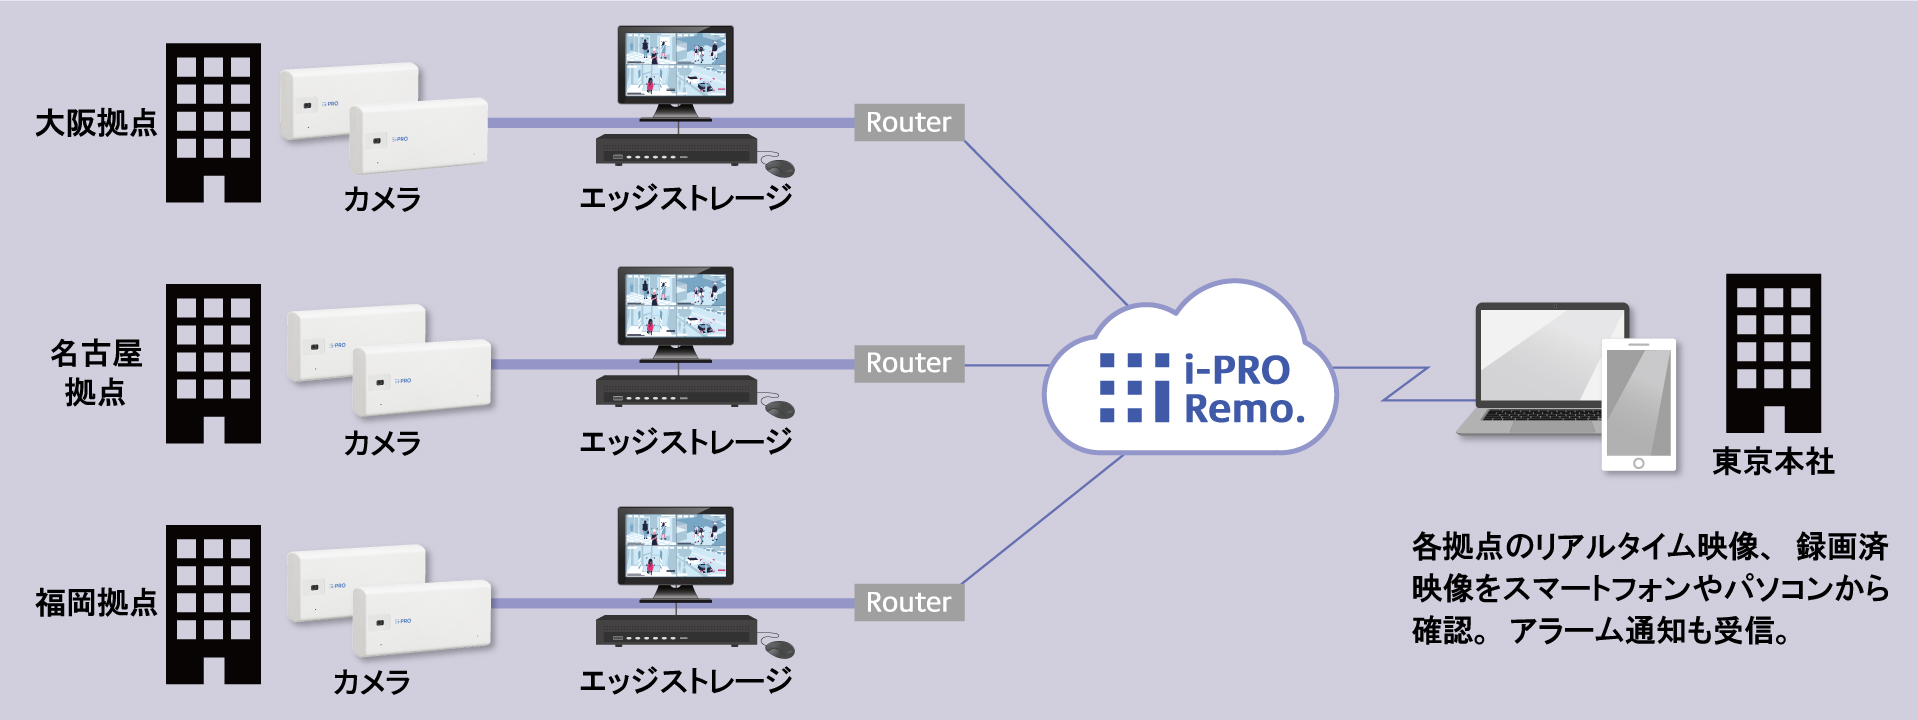 i-PRO-Remo図